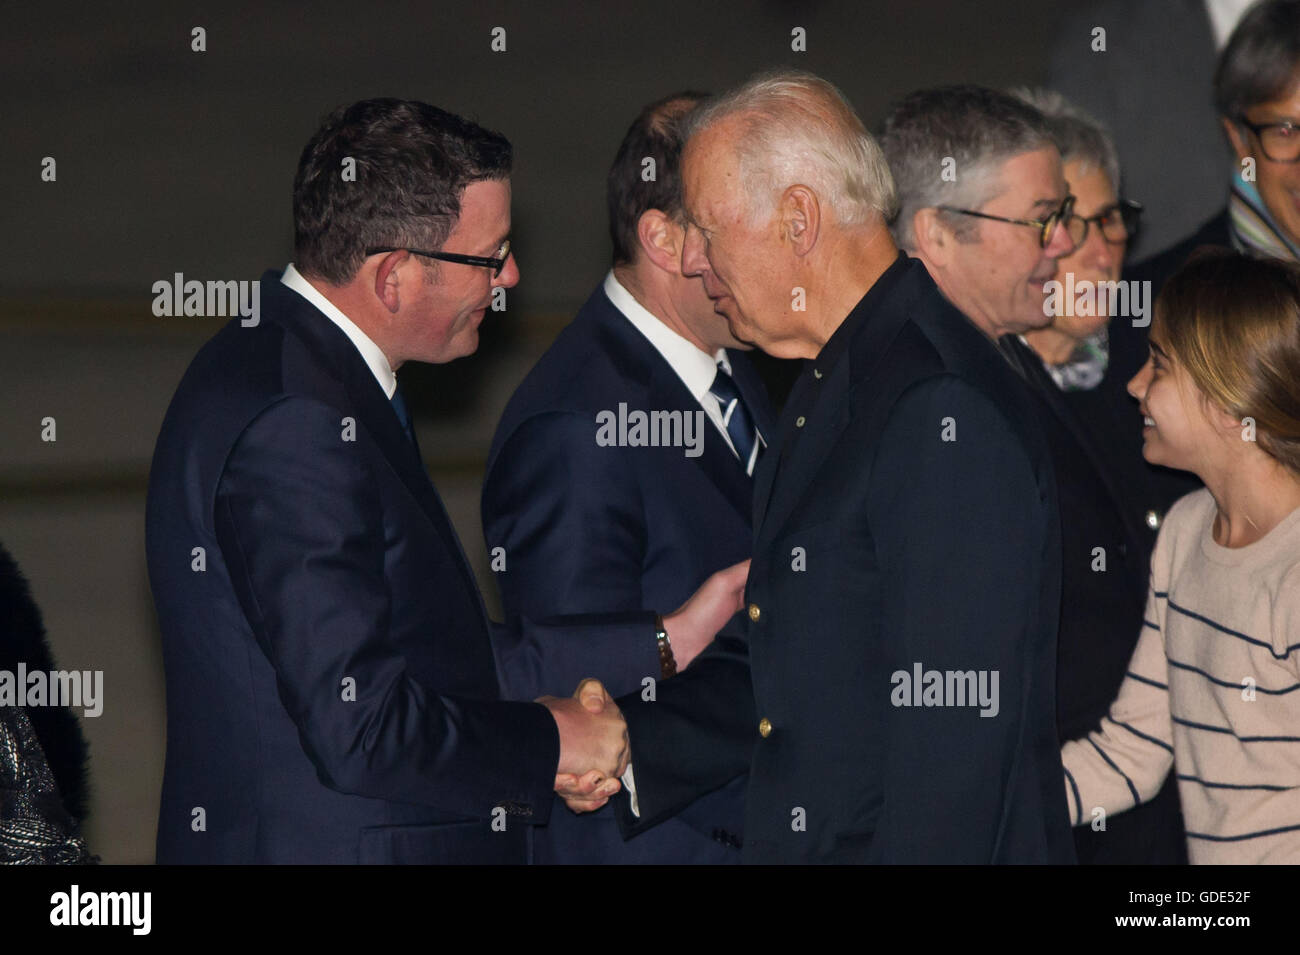 Melbourne, Australie. 16 juillet, 2016. Le Vice-président américain Joe Biden (R, avant), serre la main avec Daniel Andrews (L, avant), premier ministre de l'état de Victoria en Australie, comme il arrive à Melbourne, Australie, le 16 juillet 2016. Credit : Bai Xue/Xinhua/Alamy Live News Banque D'Images